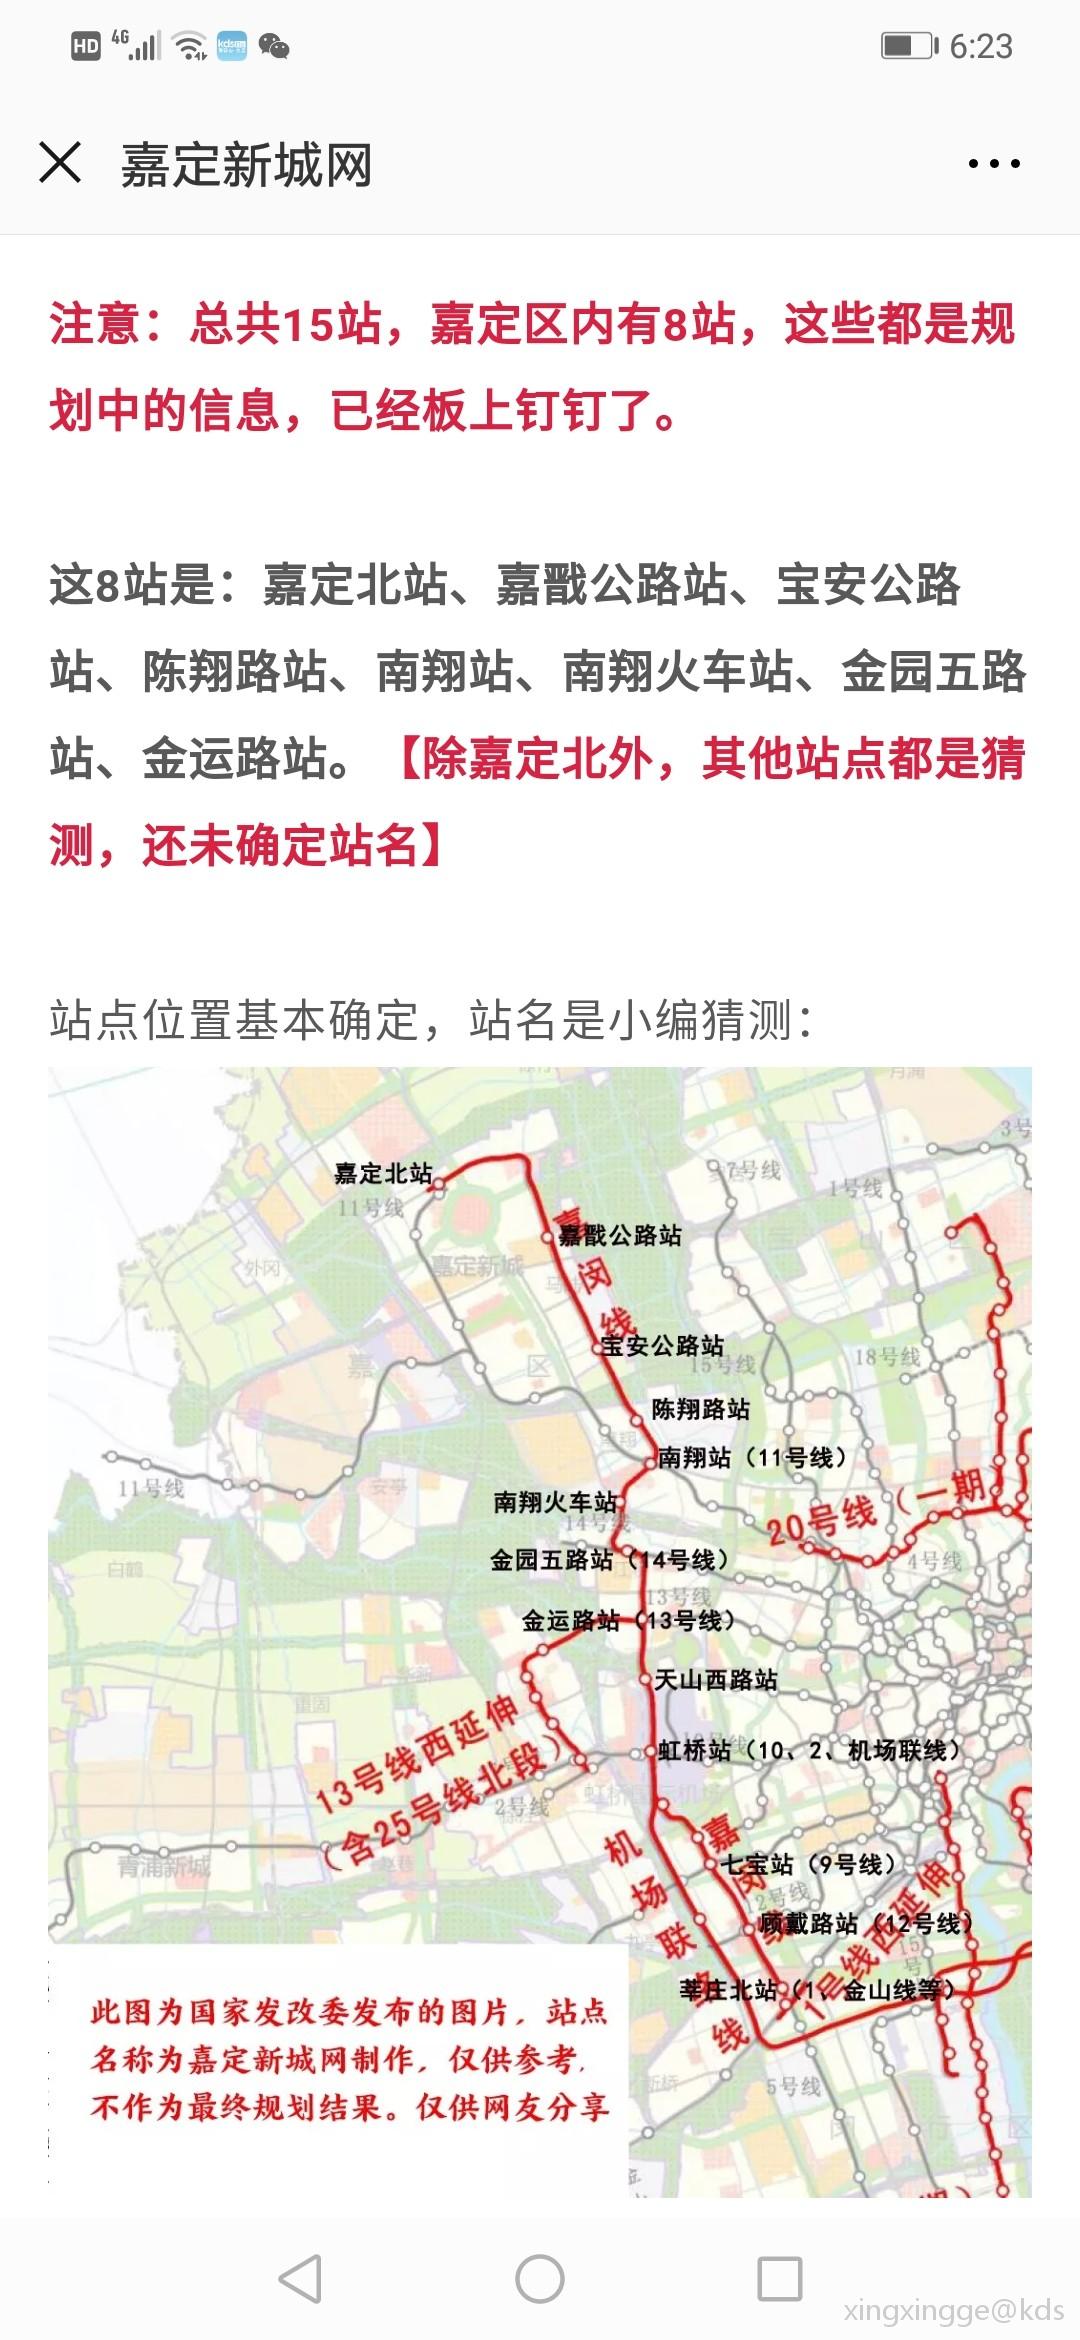 嘉闵线地铁线路图上海图片